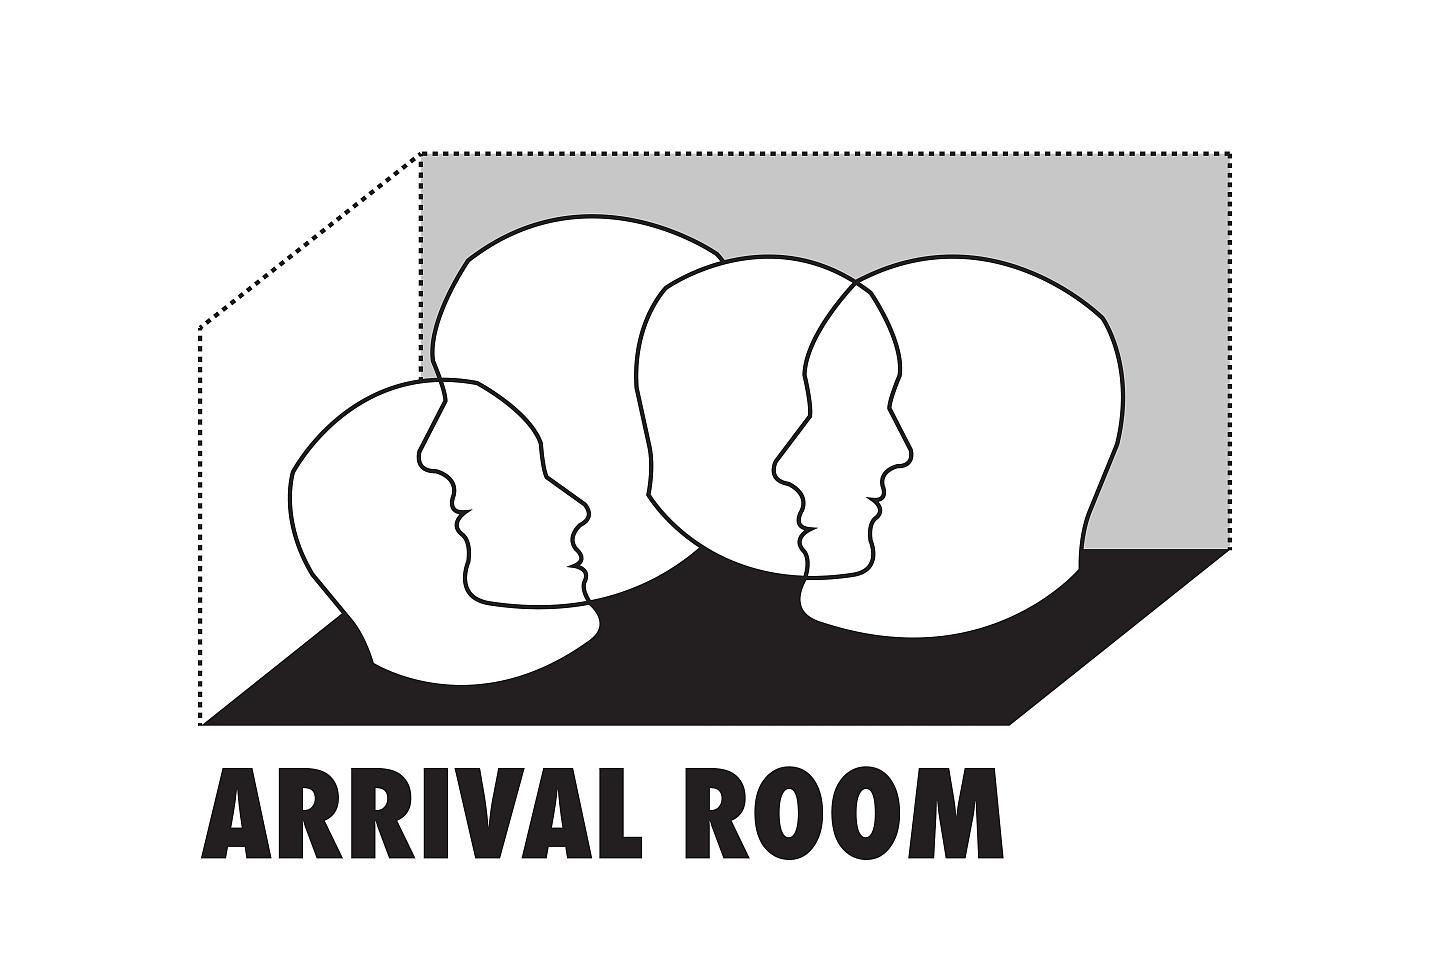 AR Arrival Room gUG (haftungsbeschränkt)